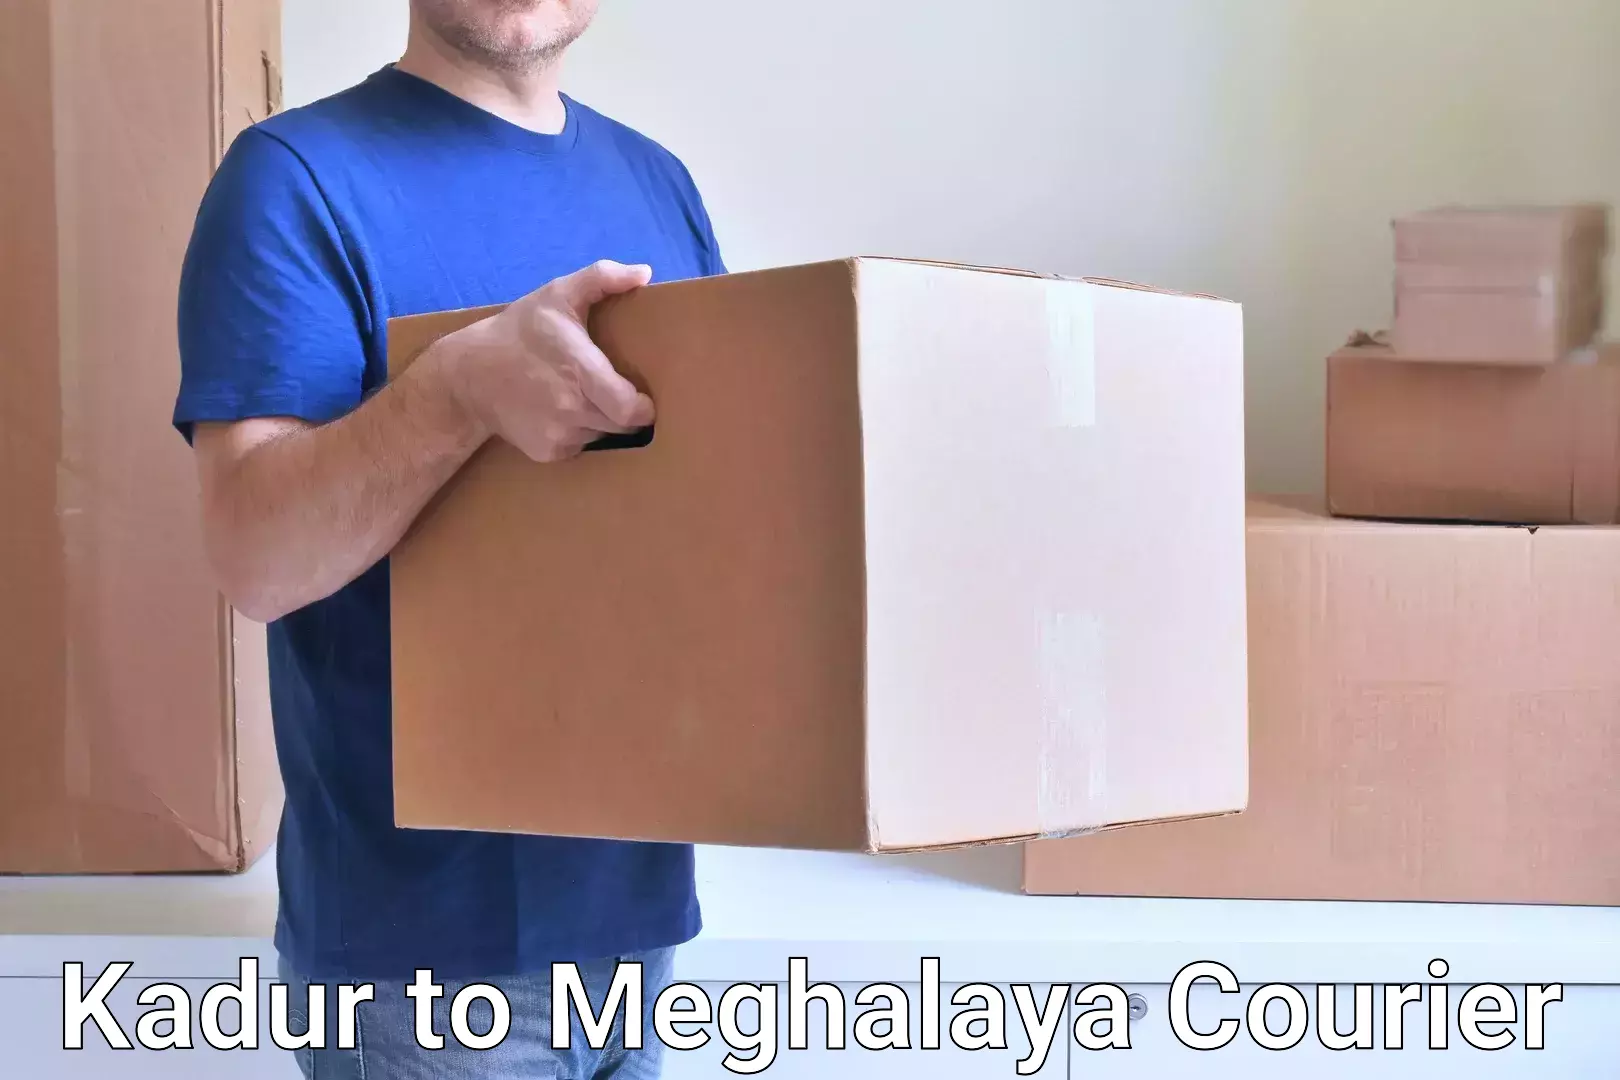 Urgent courier needs Kadur to Meghalaya